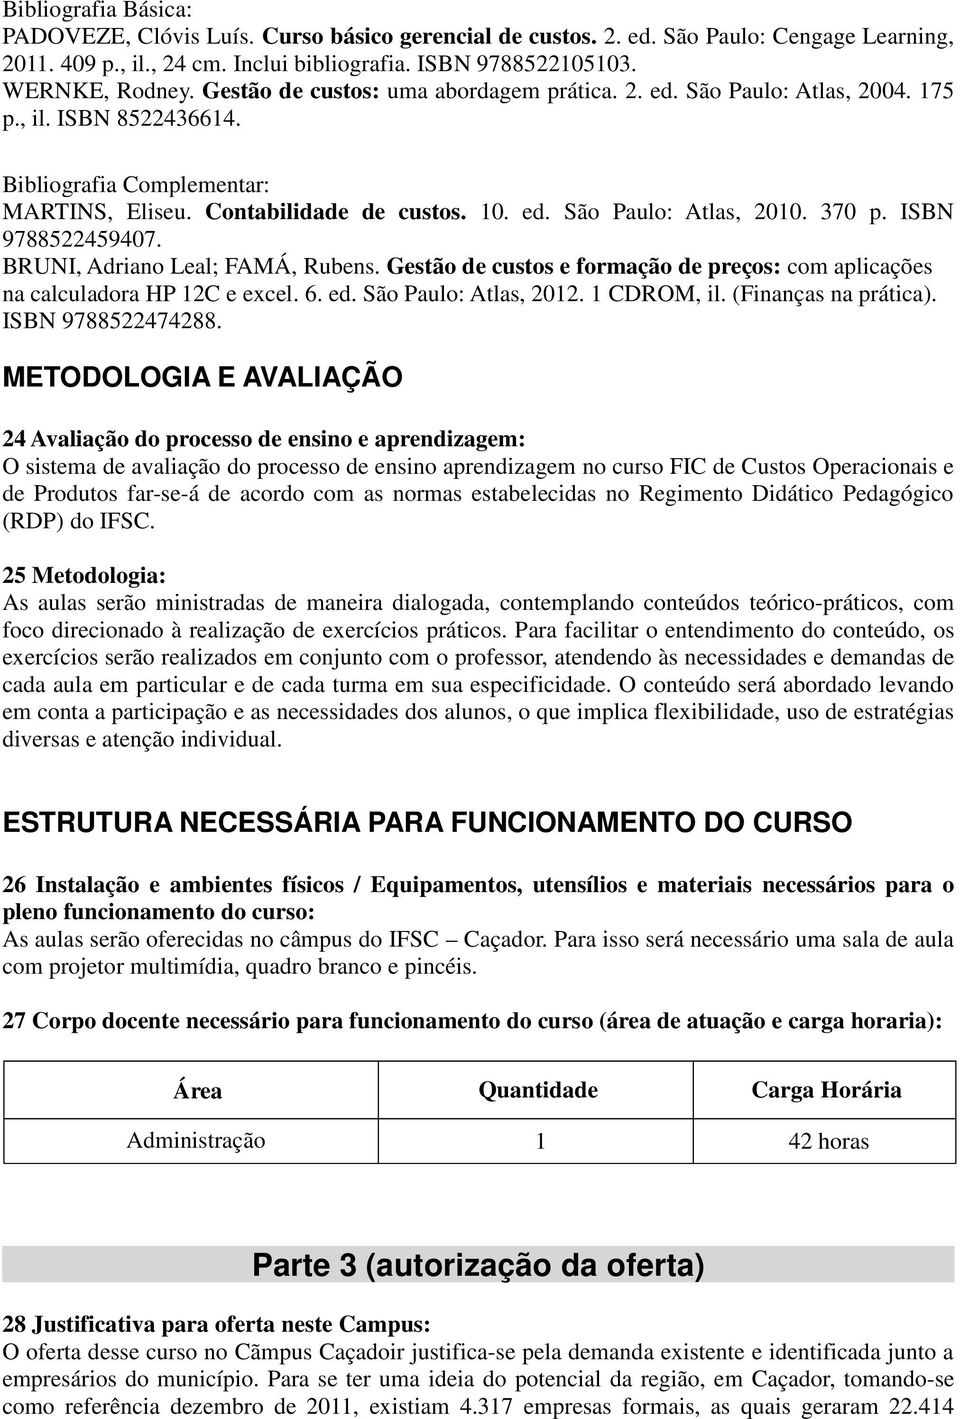 370 p. ISBN 9788522459407. BRUNI, Adriano Leal; FAMÁ, Rubens. Gestão de custos e formação de preços: com aplicações na calculadora HP 12C e excel. 6. ed. São Paulo: Atlas, 2012. 1 CDROM, il.